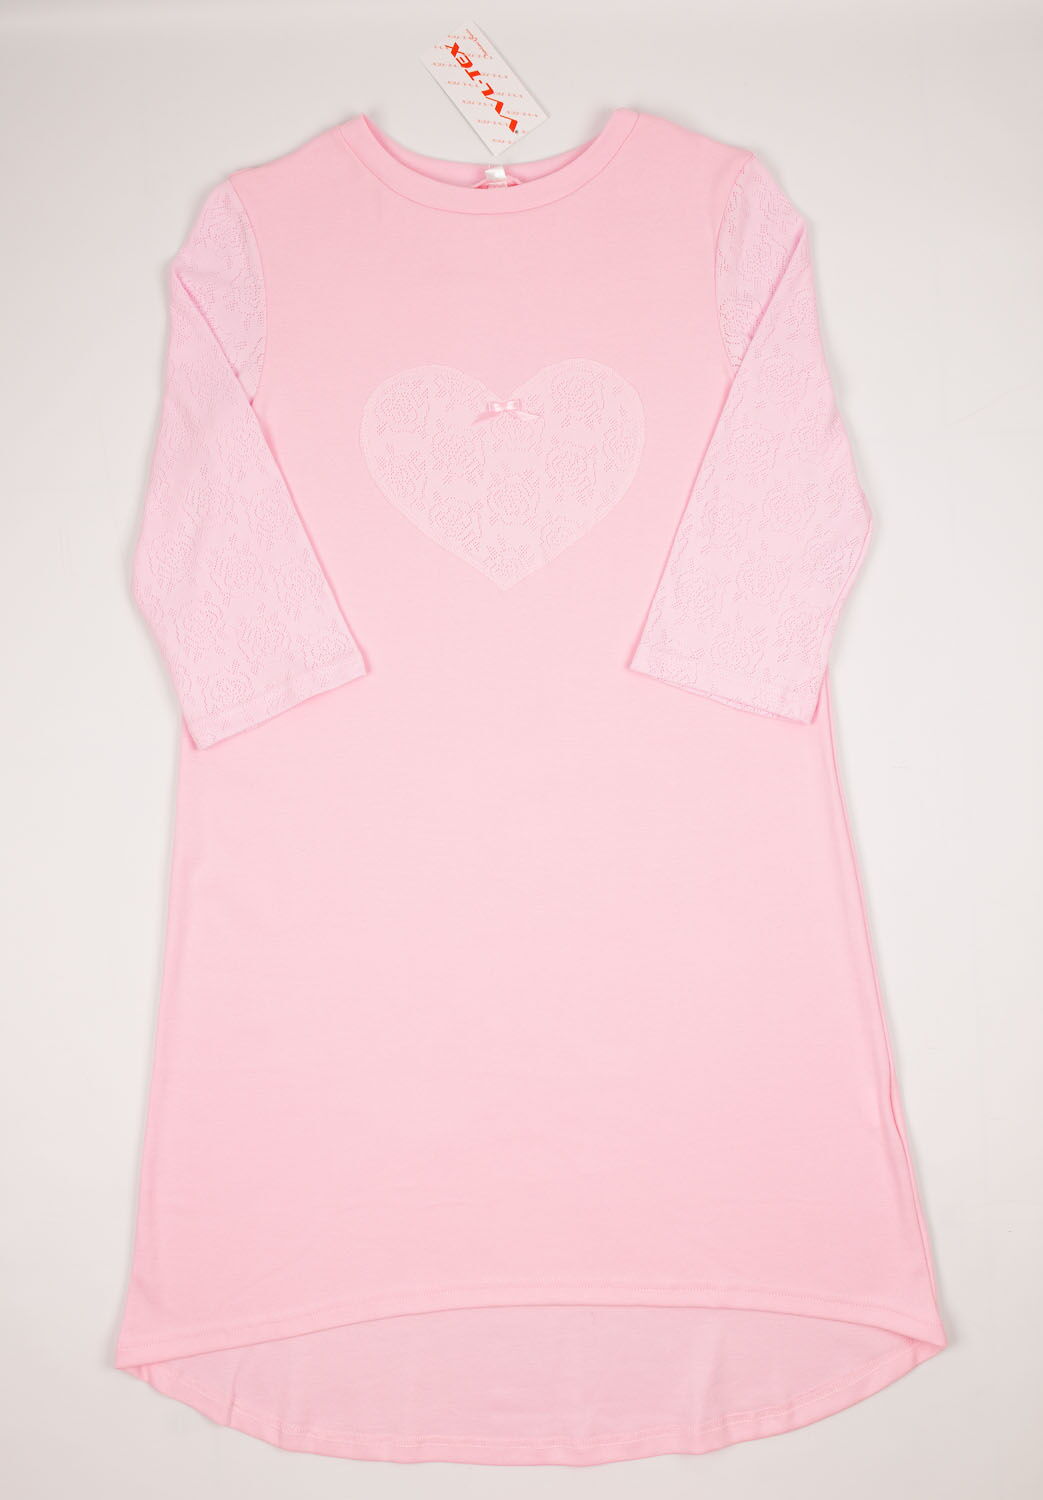 Сорочка женская VVL Сердце розовая 356 - цена